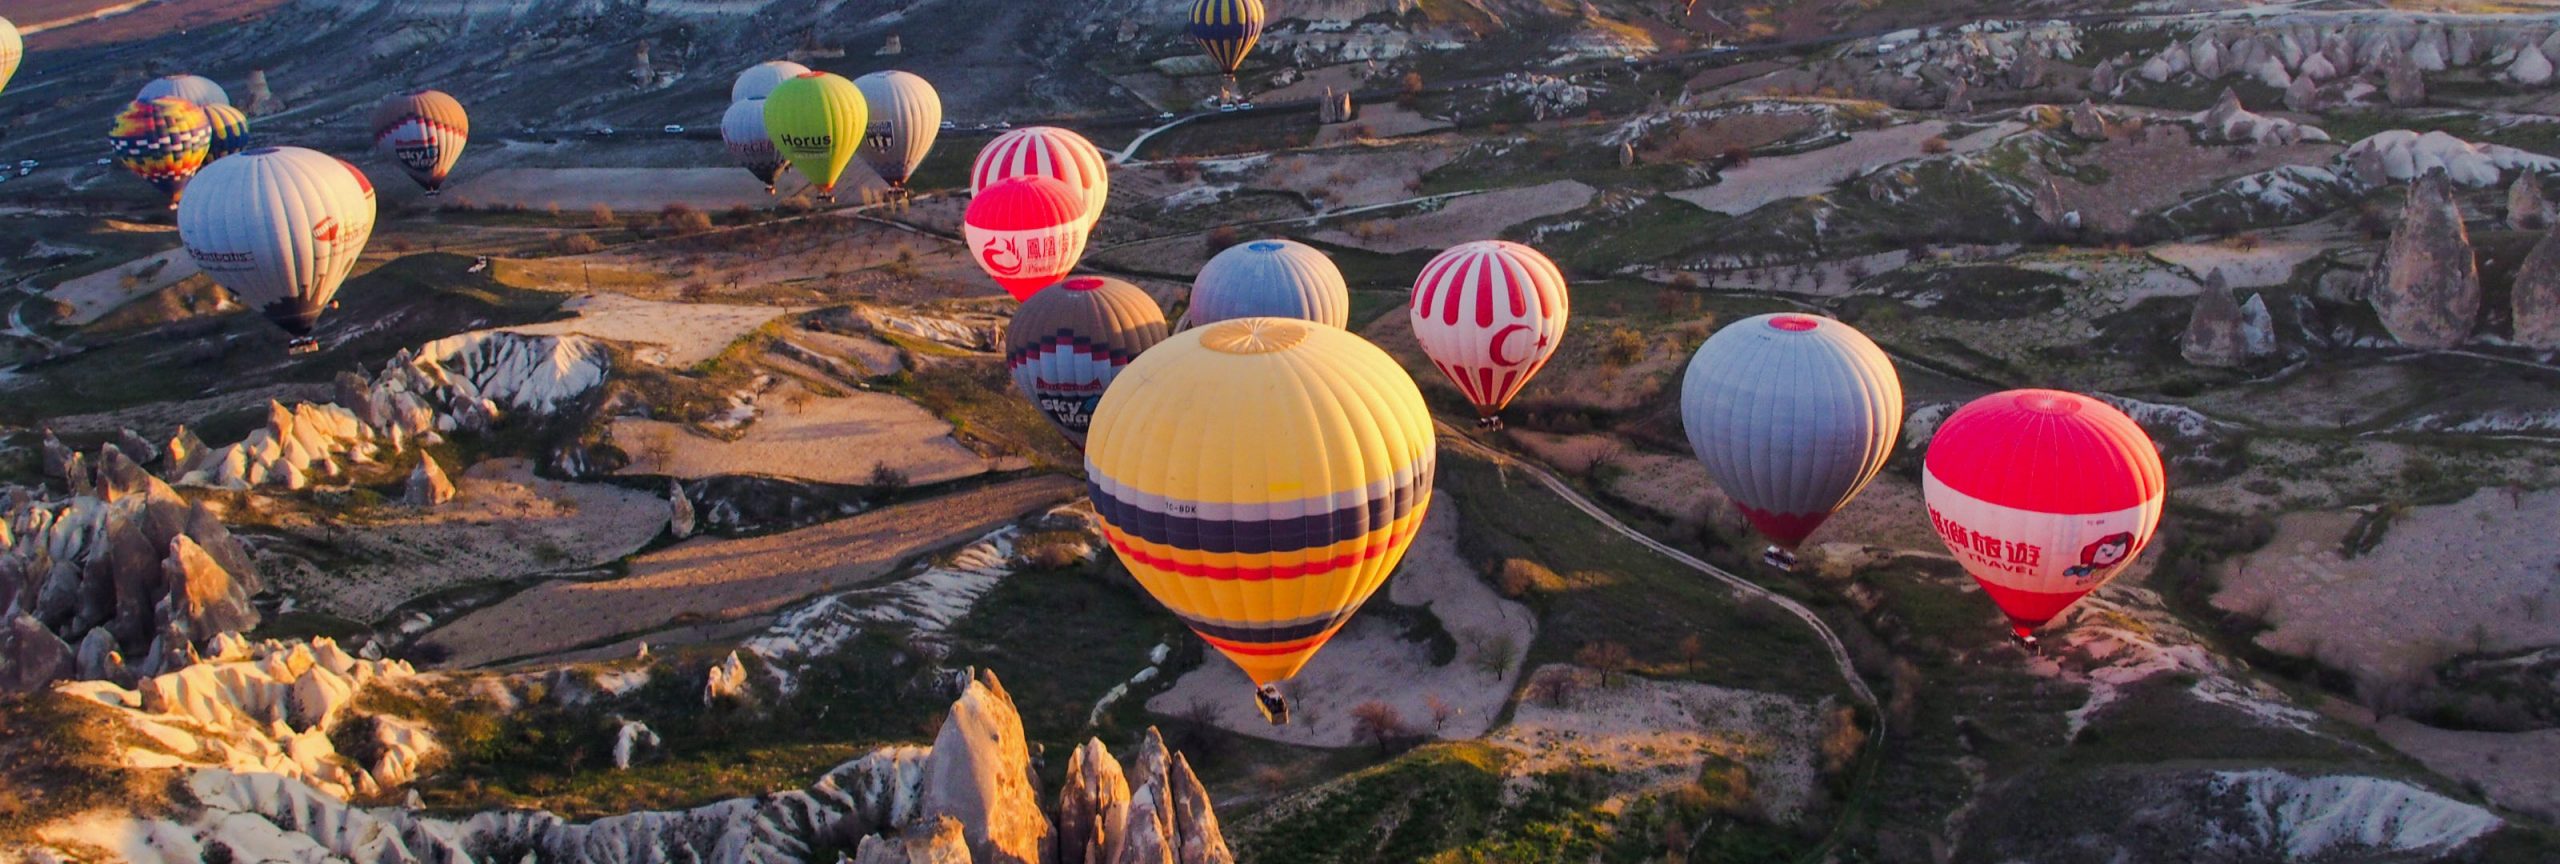 Turkije vakantie rotsen Cappadocië 1 - De Planeet Reizen